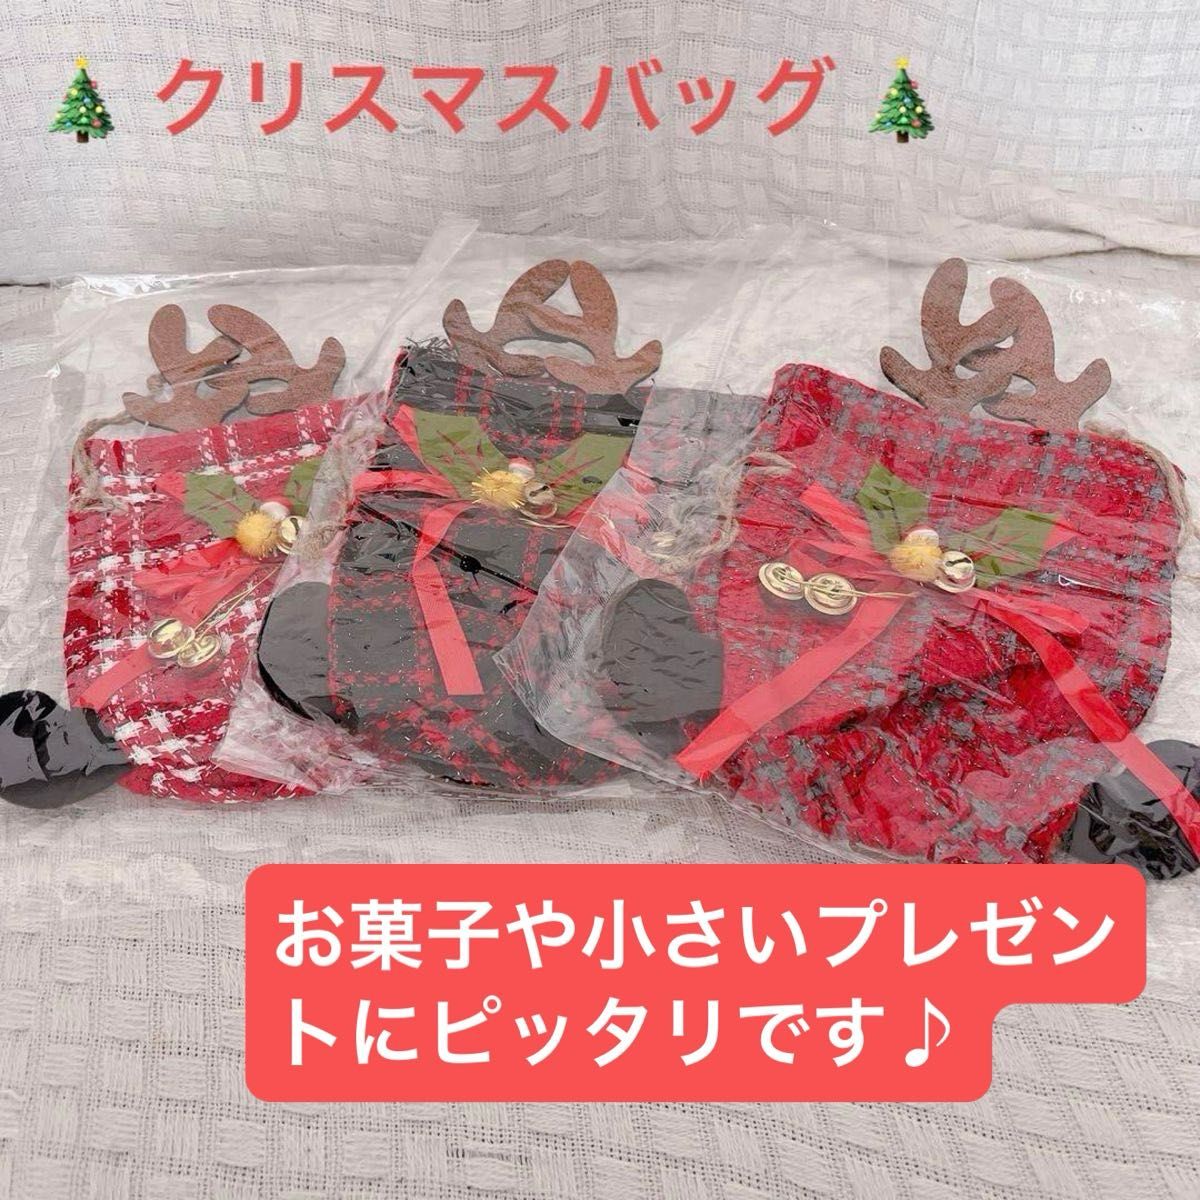 クリスマス ラッピング 袋 ギフト 小物入れ ポーチ サンタ くりすます 巾着 きんちゃく 3個セット お菓子 プチプレゼント